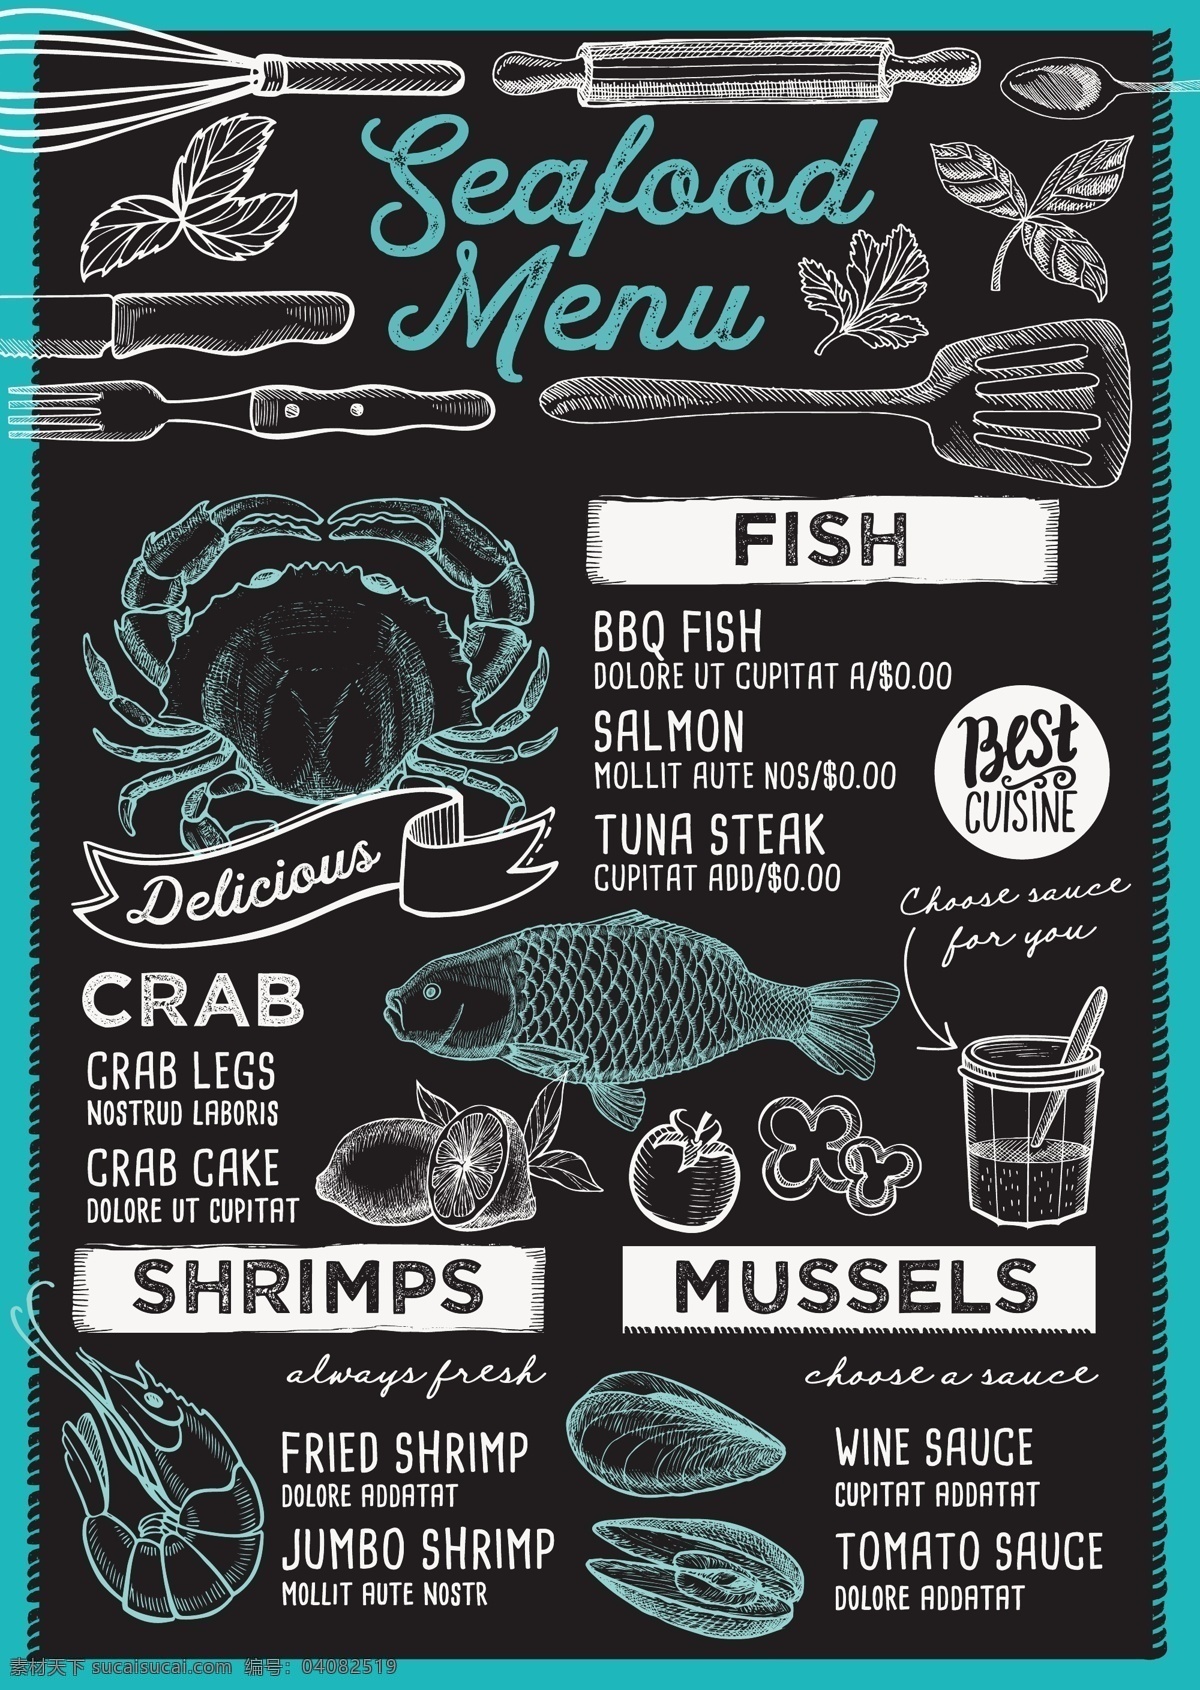 手绘线条素材 厨房用具 鱼 螃蟹 手绘海鲜 海货 手绘素材 素描 打蛋器 食材食物 生活百科 餐饮美食